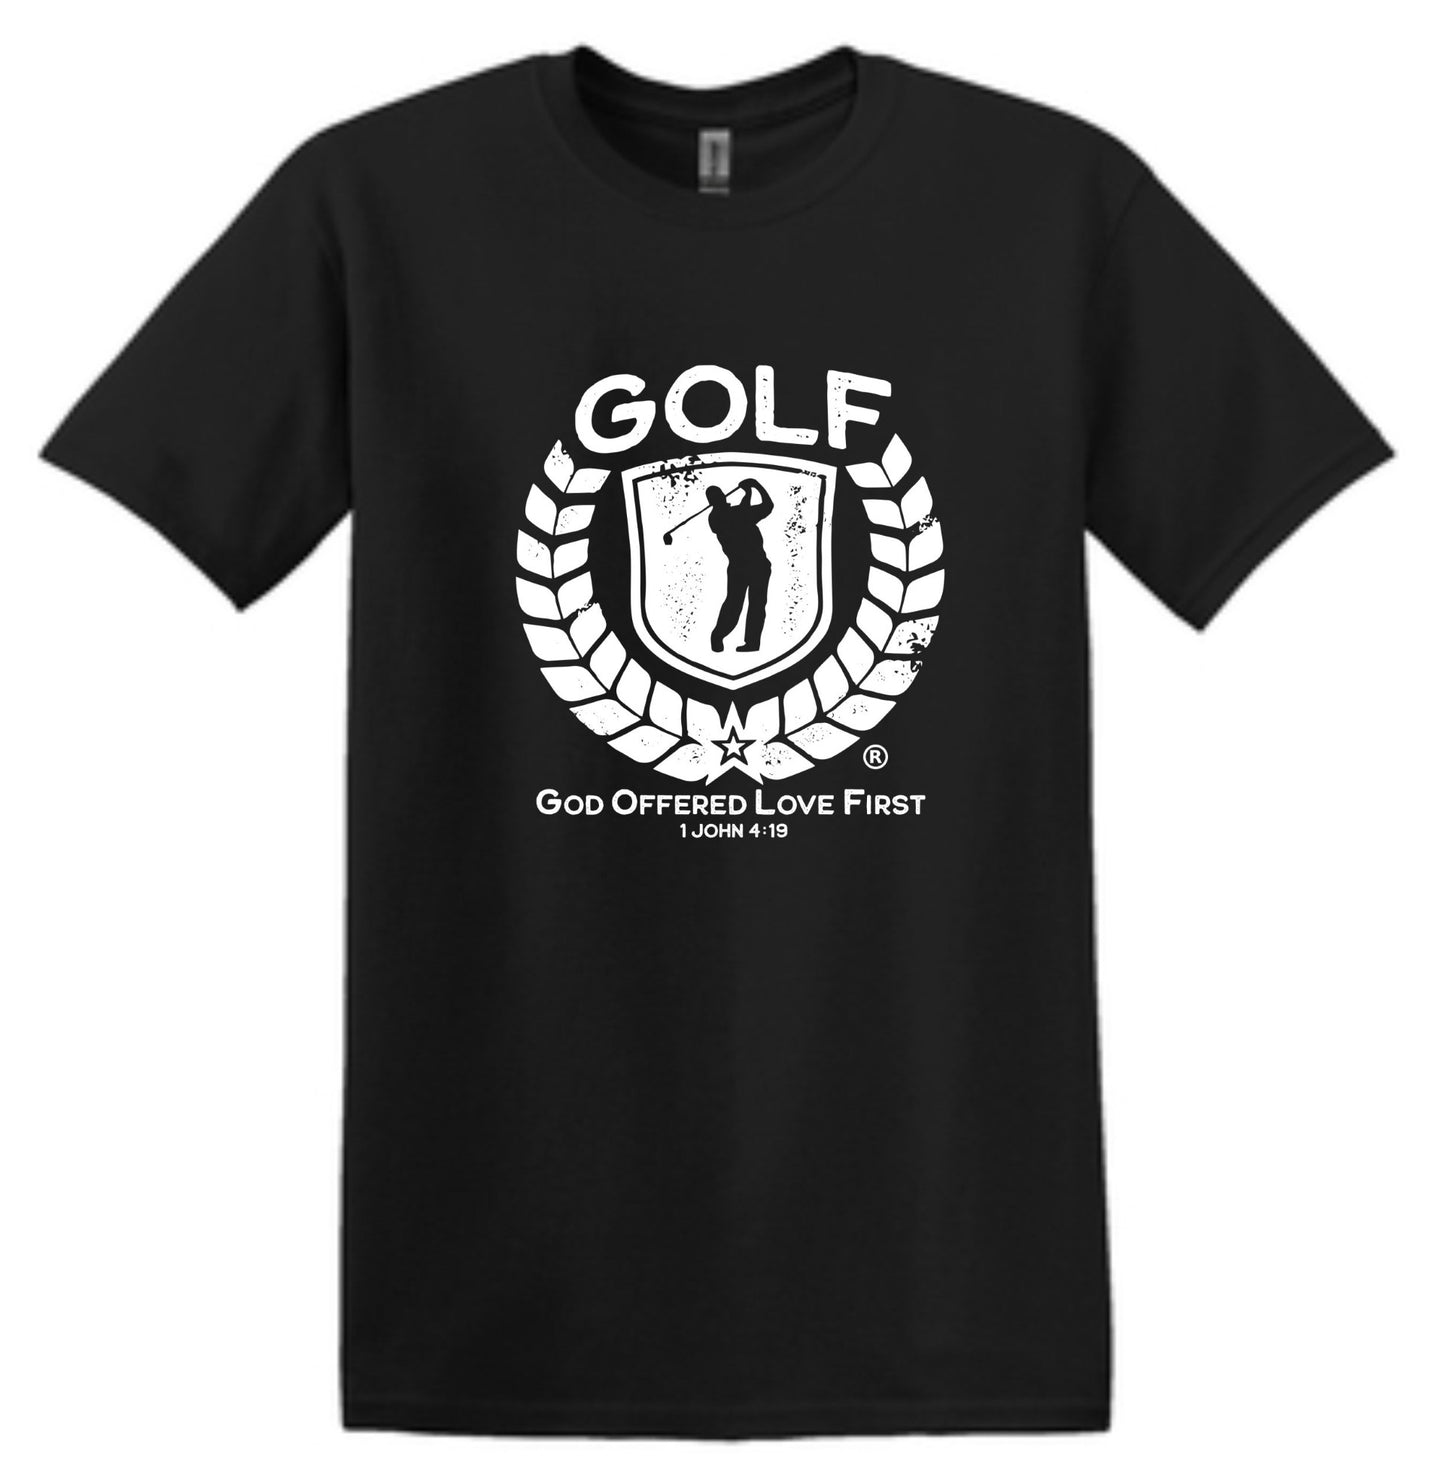 G.O.L.F ® God Offered Love First® Men's G.O.L.F.® T- shirt.